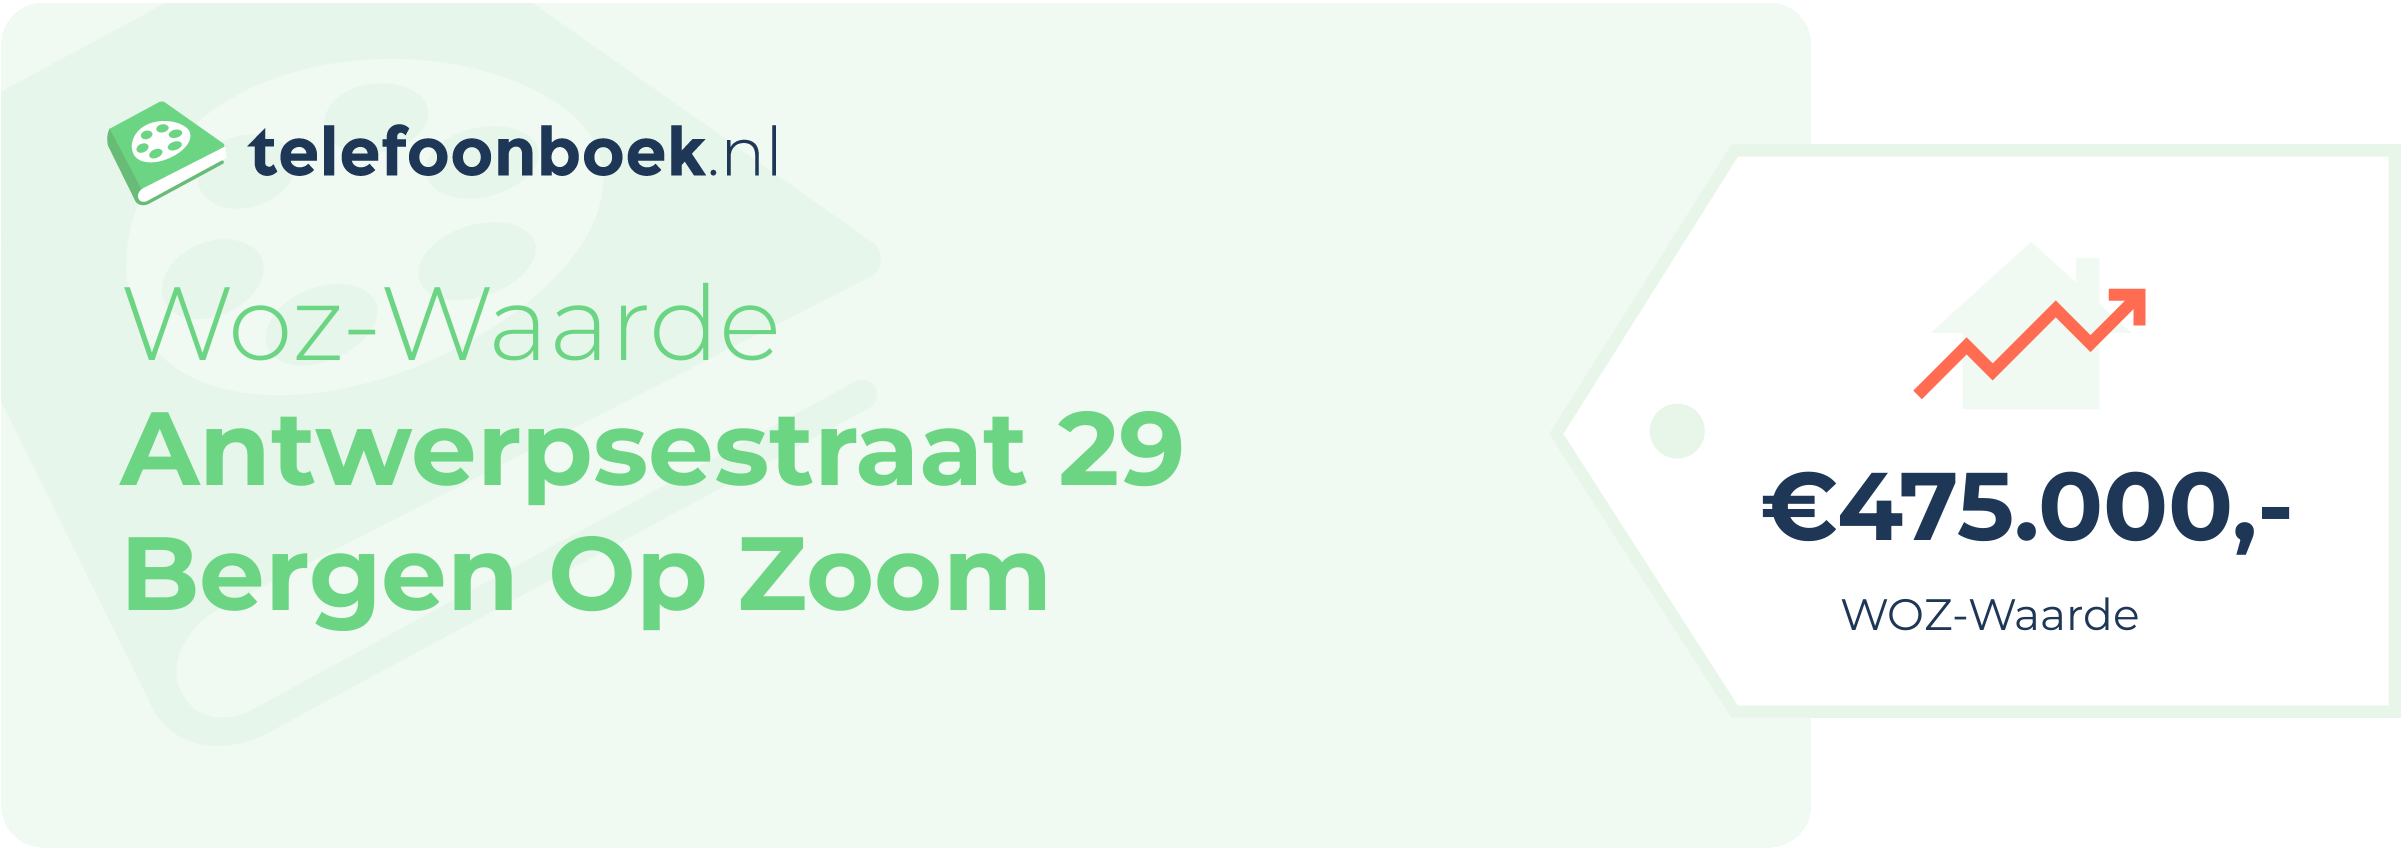 WOZ-waarde Antwerpsestraat 29 Bergen Op Zoom